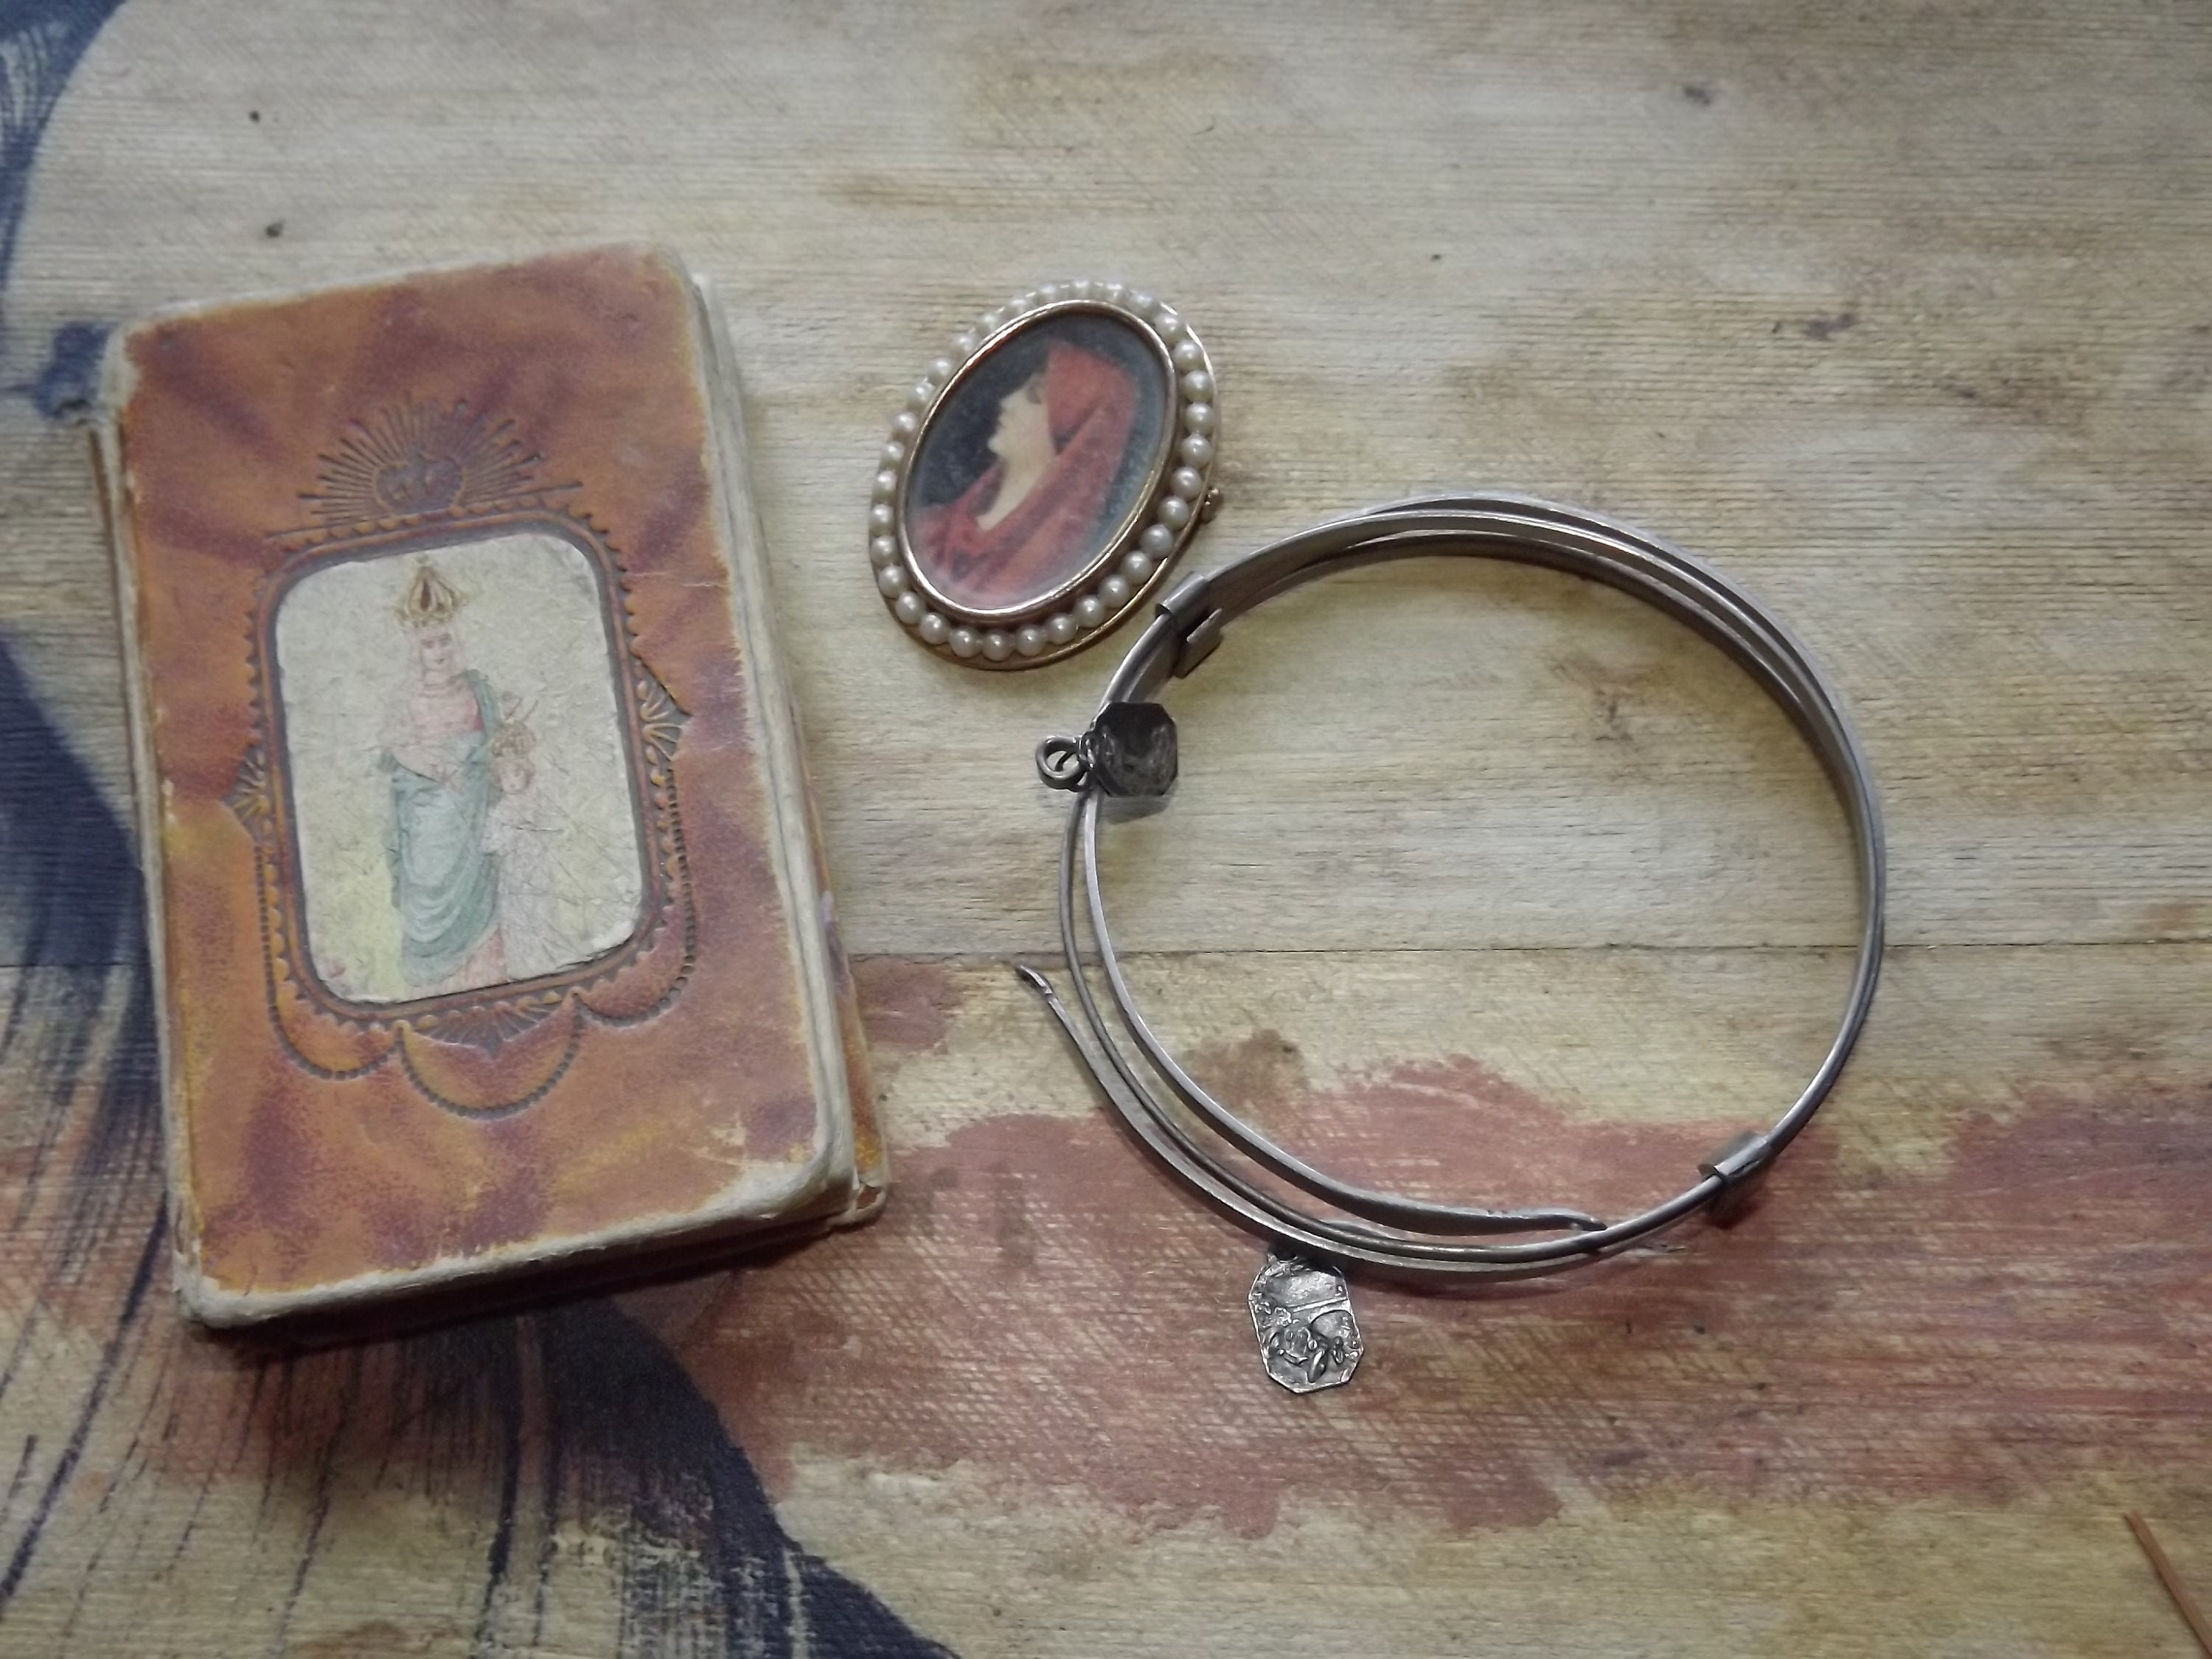 ensemble de 3 objets chrétiens - broche vierge ary bracelet métallique sainte thérèse st christophe médailles pocket missal paroissien 1928